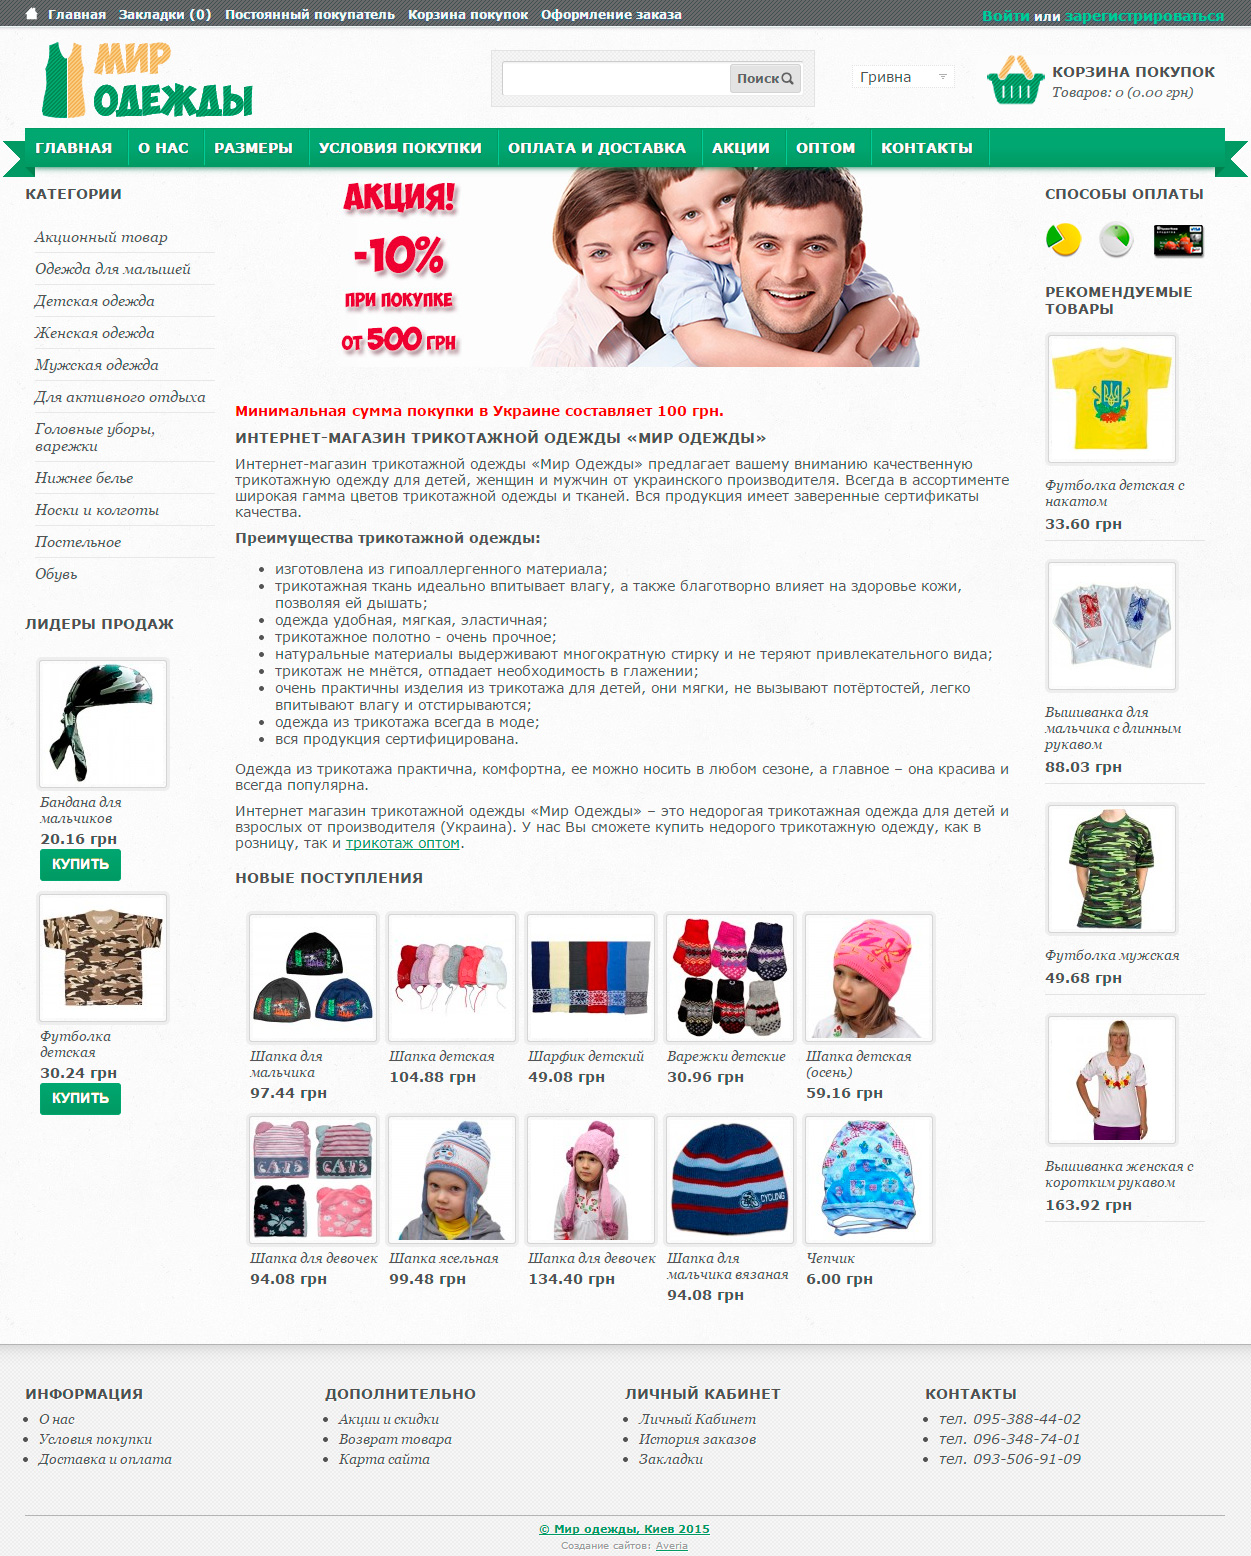 Розробка інтернет-магазину «Світ Одягу» Україна.